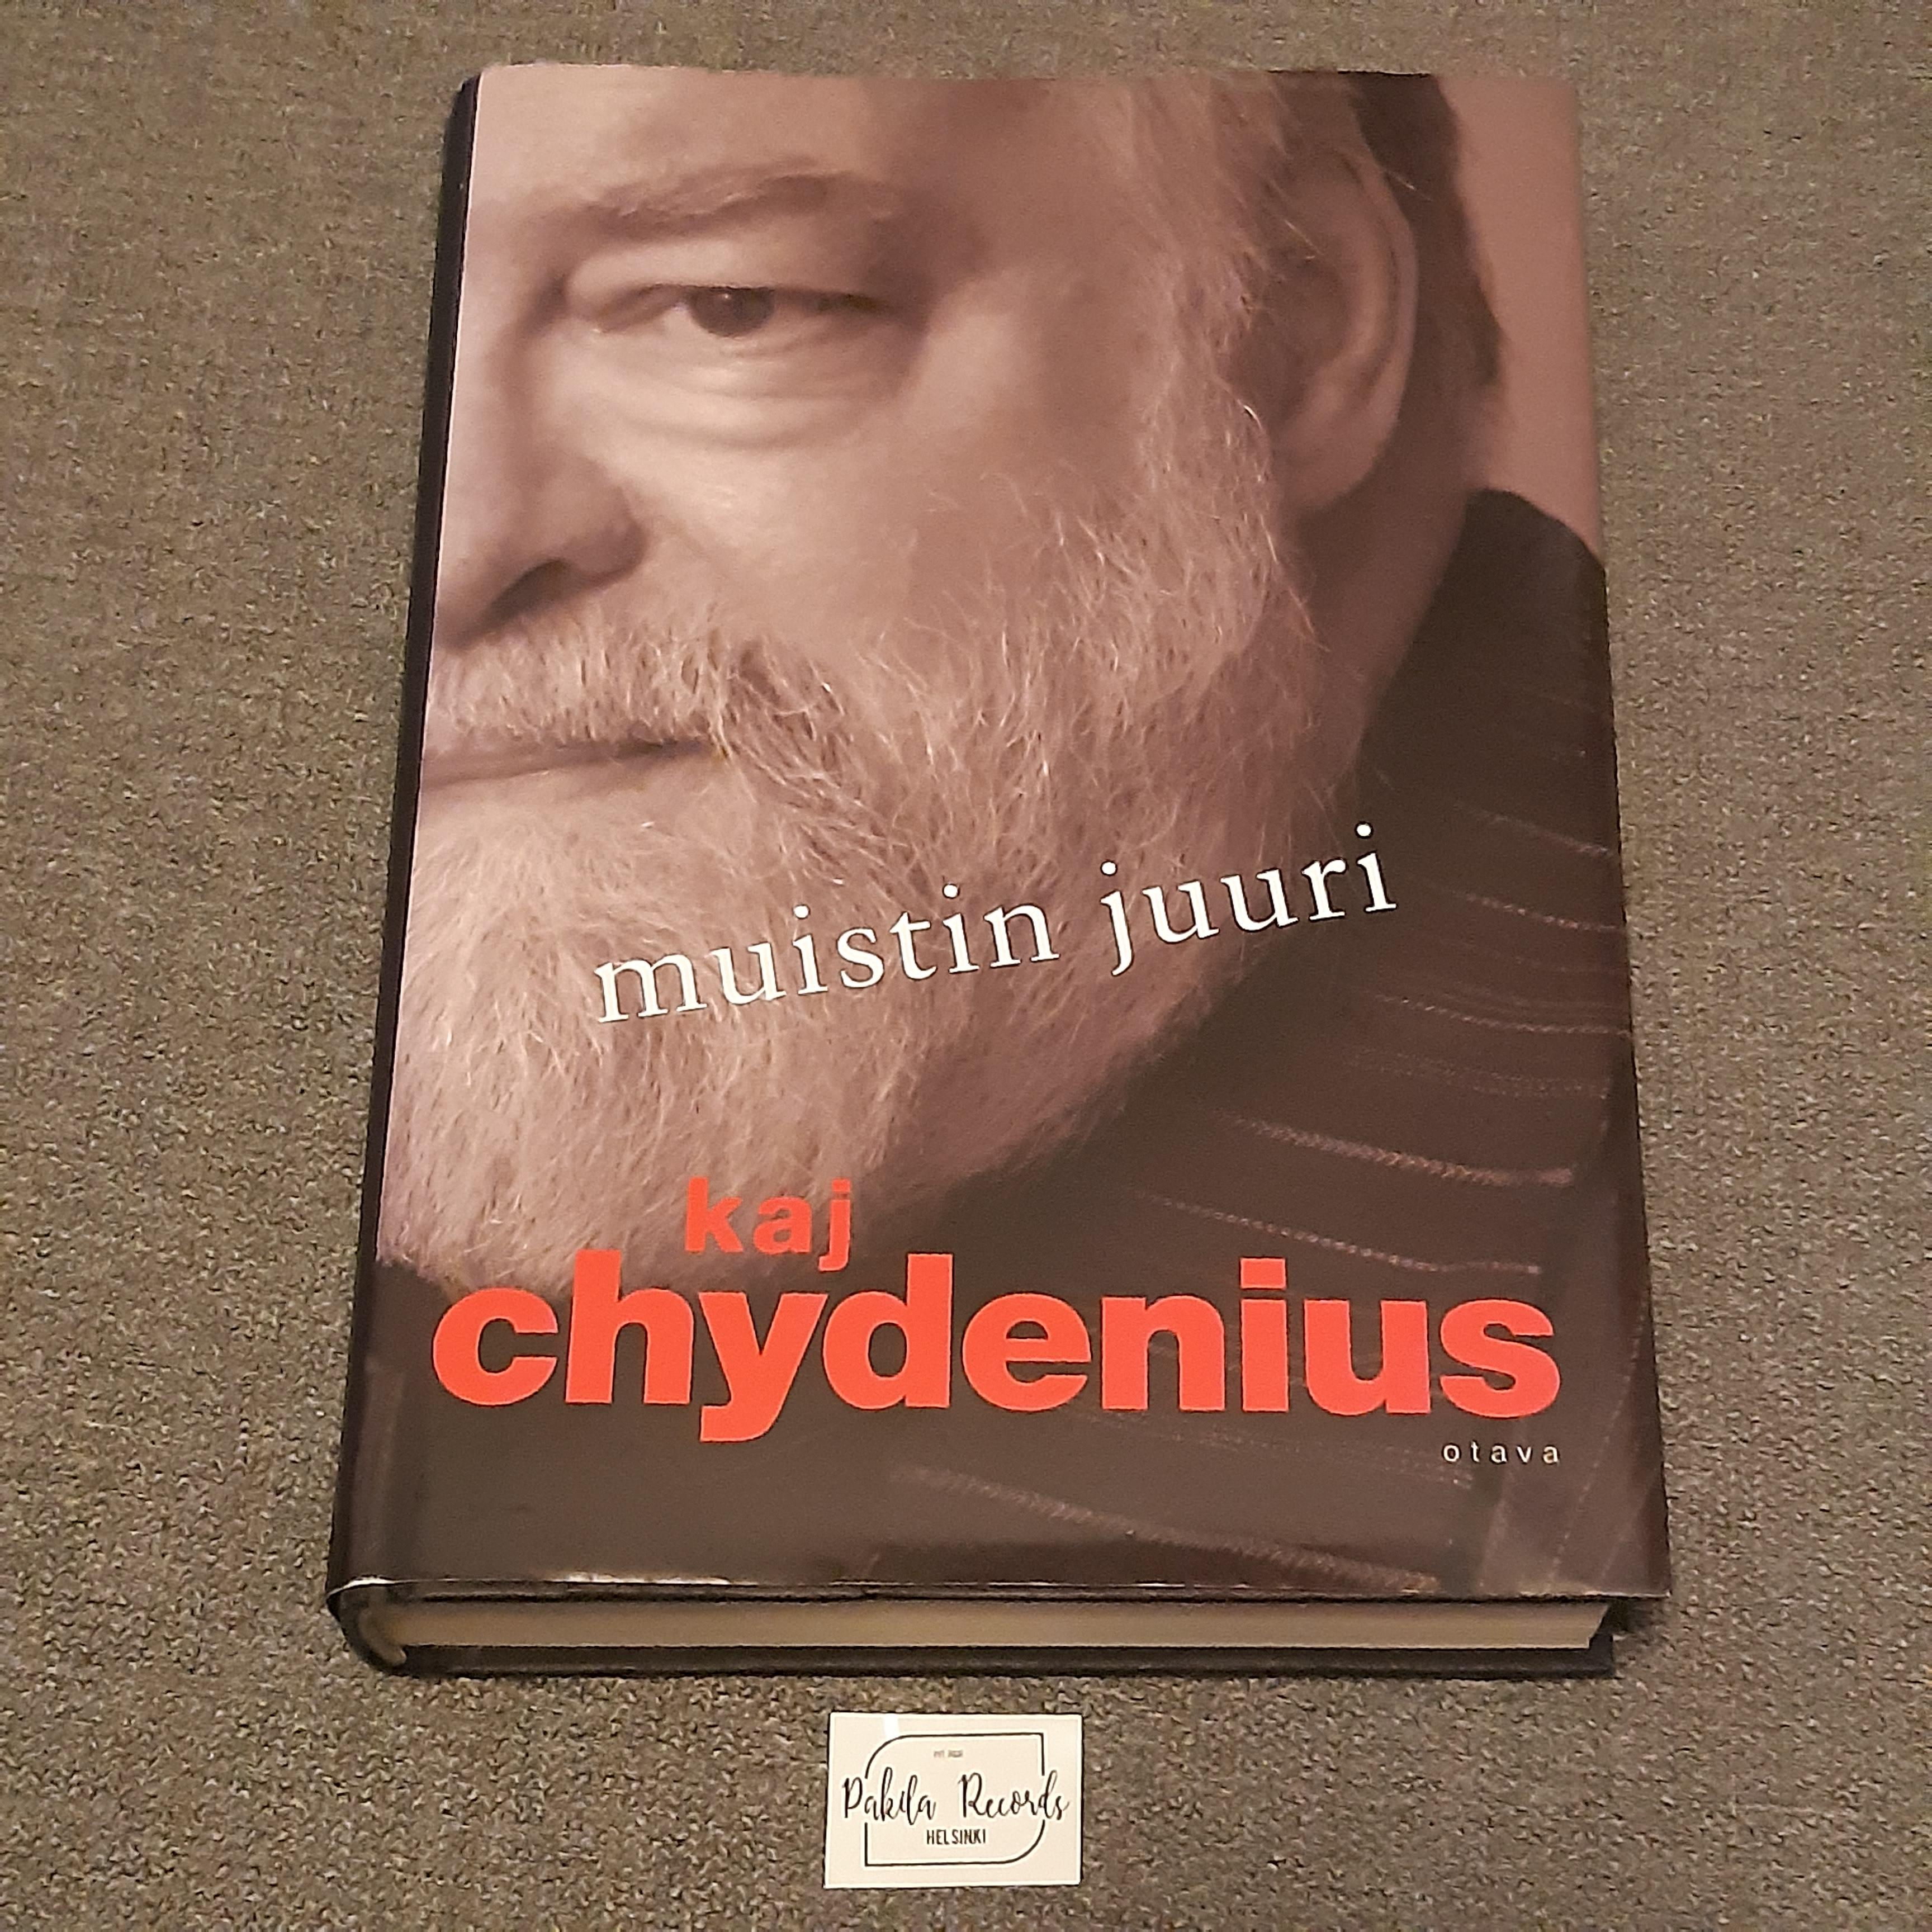 Kaj Chydenius - Muistin juuri - Kirja (käytetty)